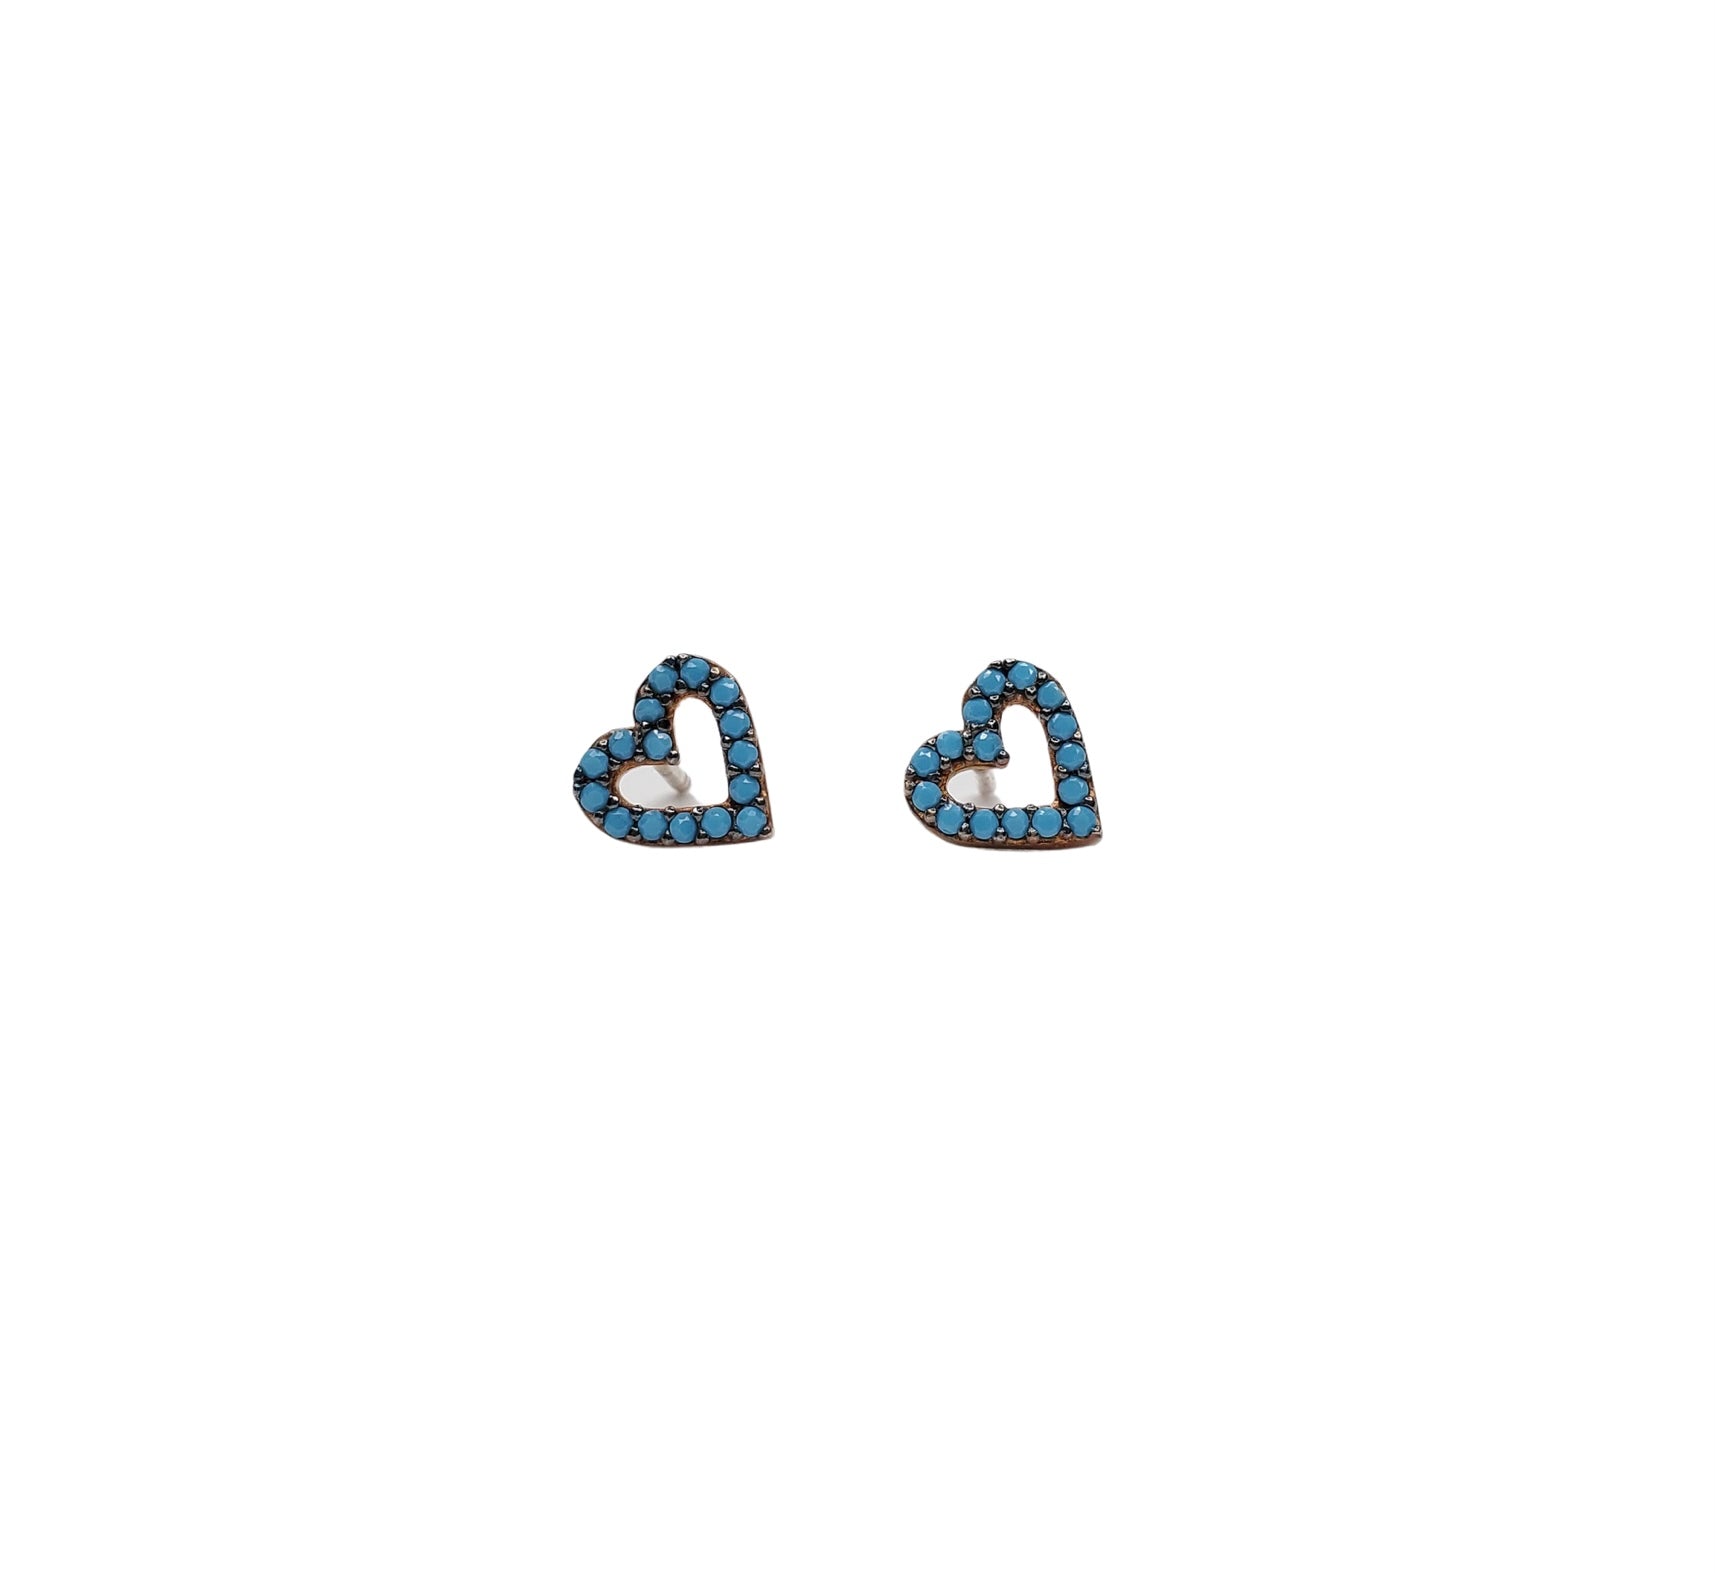 Turquoise zirconia, heart shaped stud earrings.